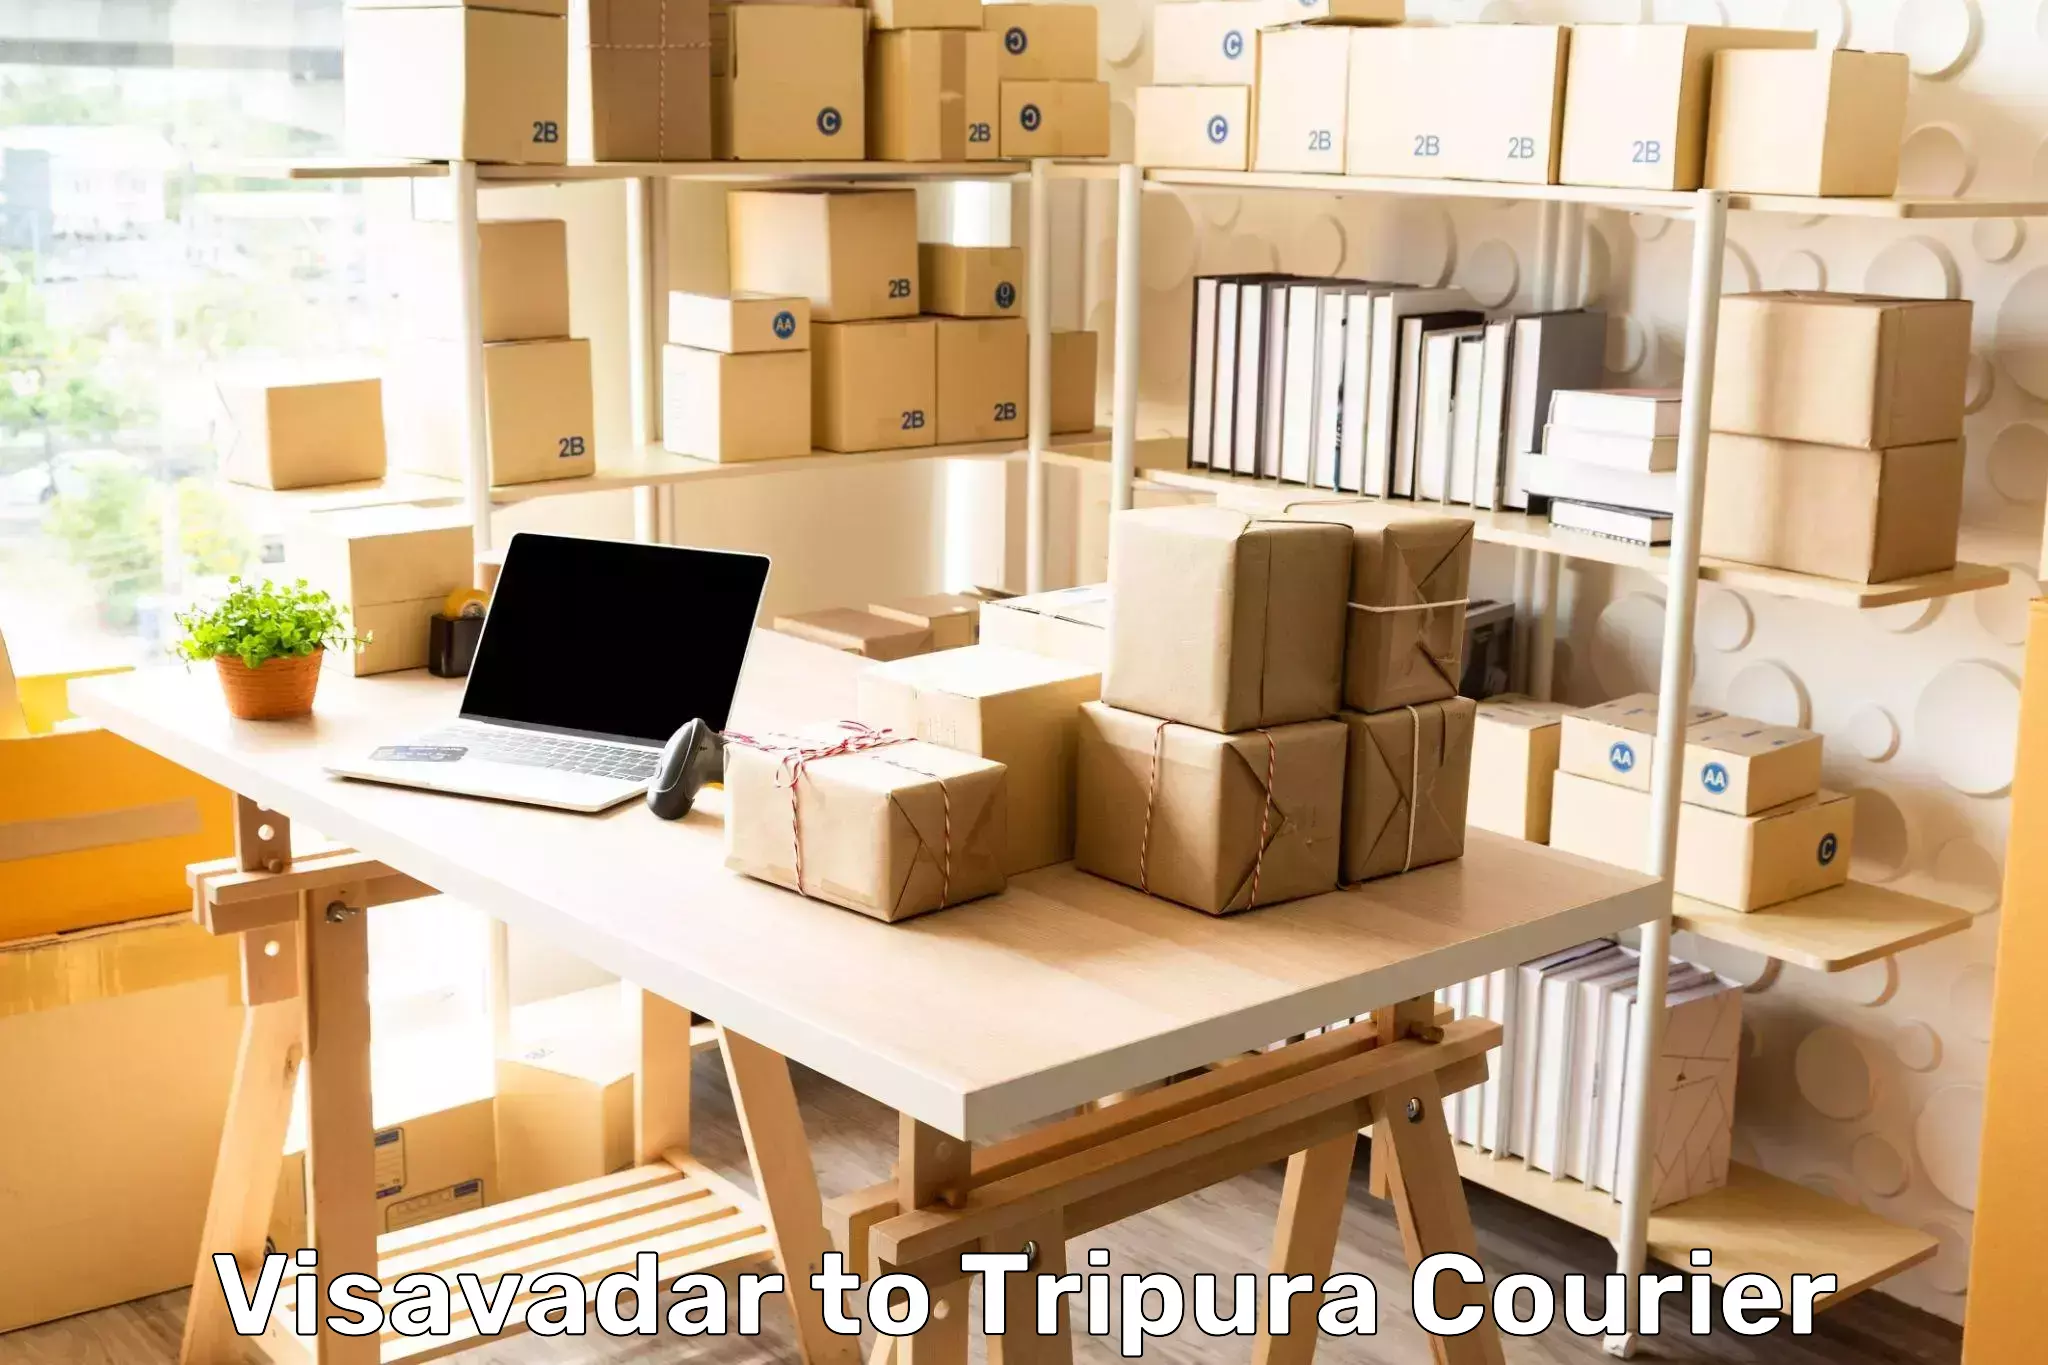 Budget-friendly shipping Visavadar to Udaipur Tripura